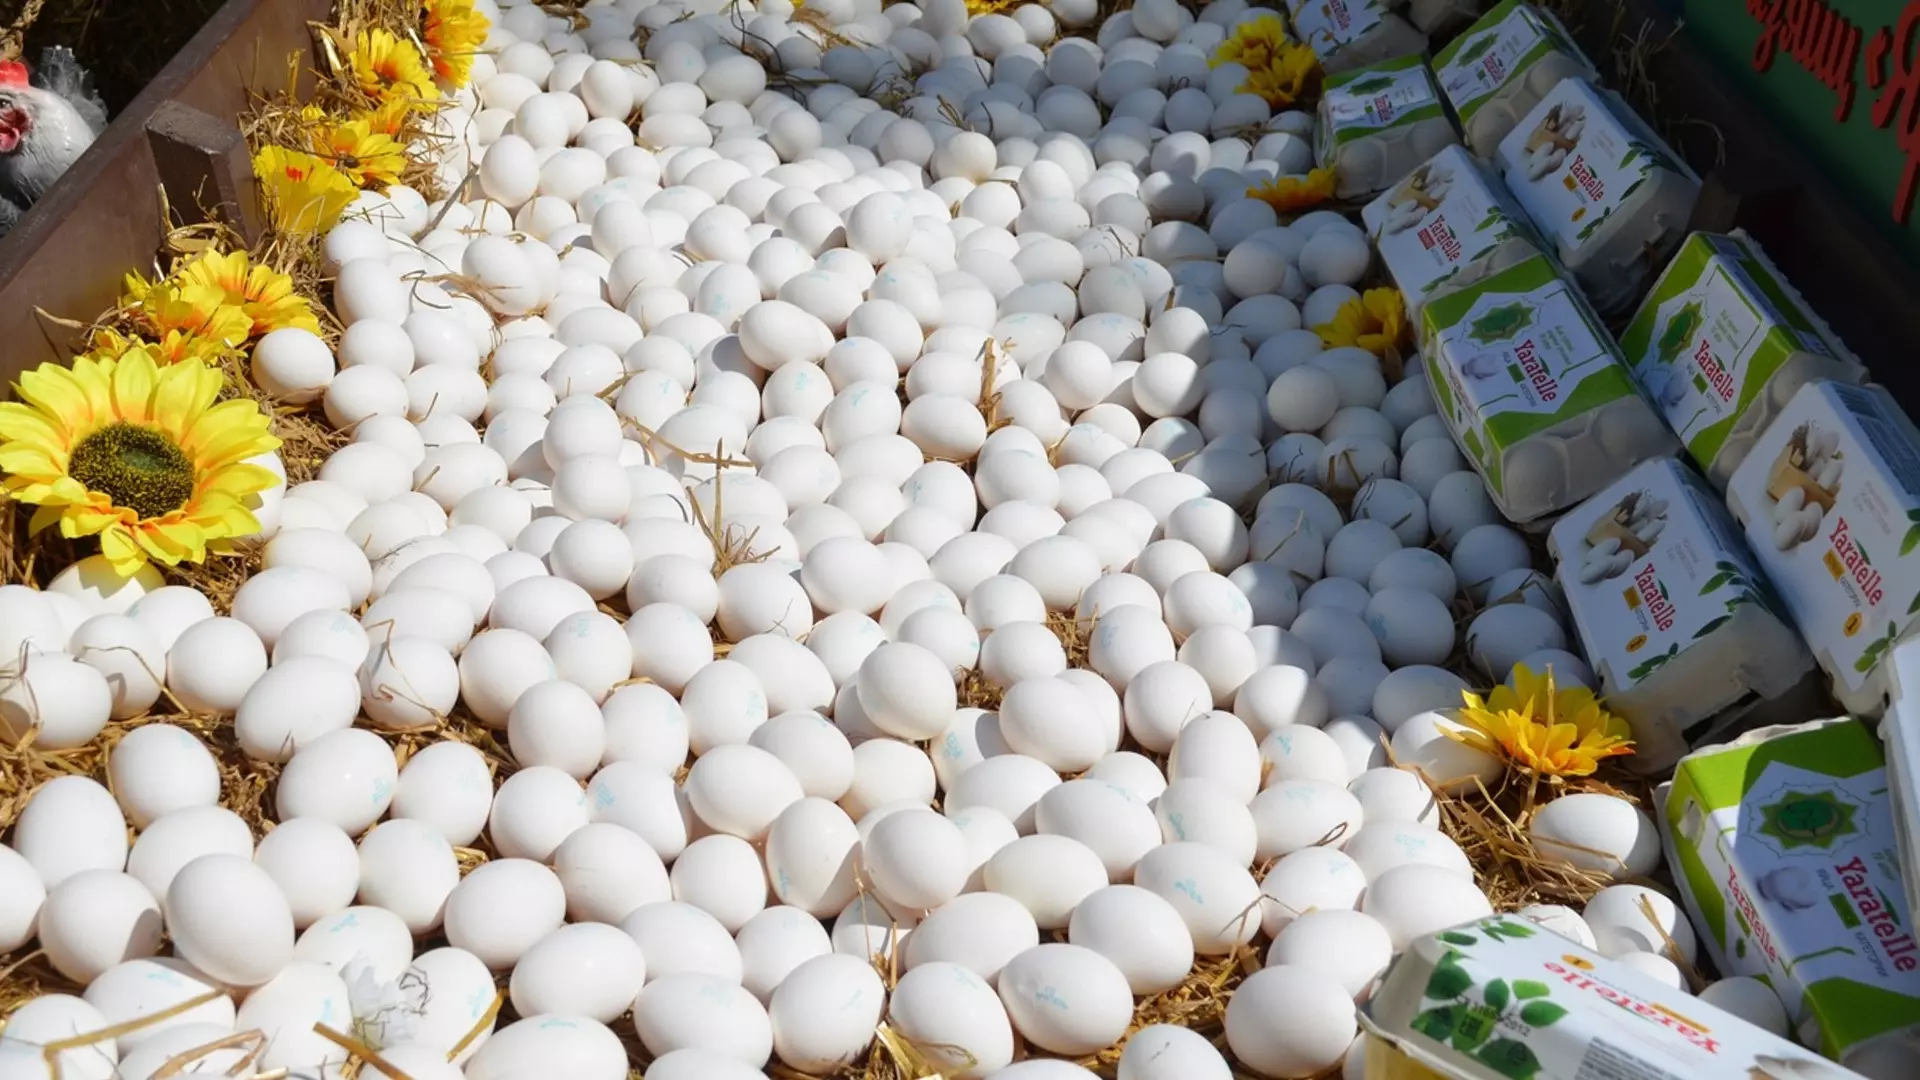 Цены на яйца не снижаются несмотря на рост импорта